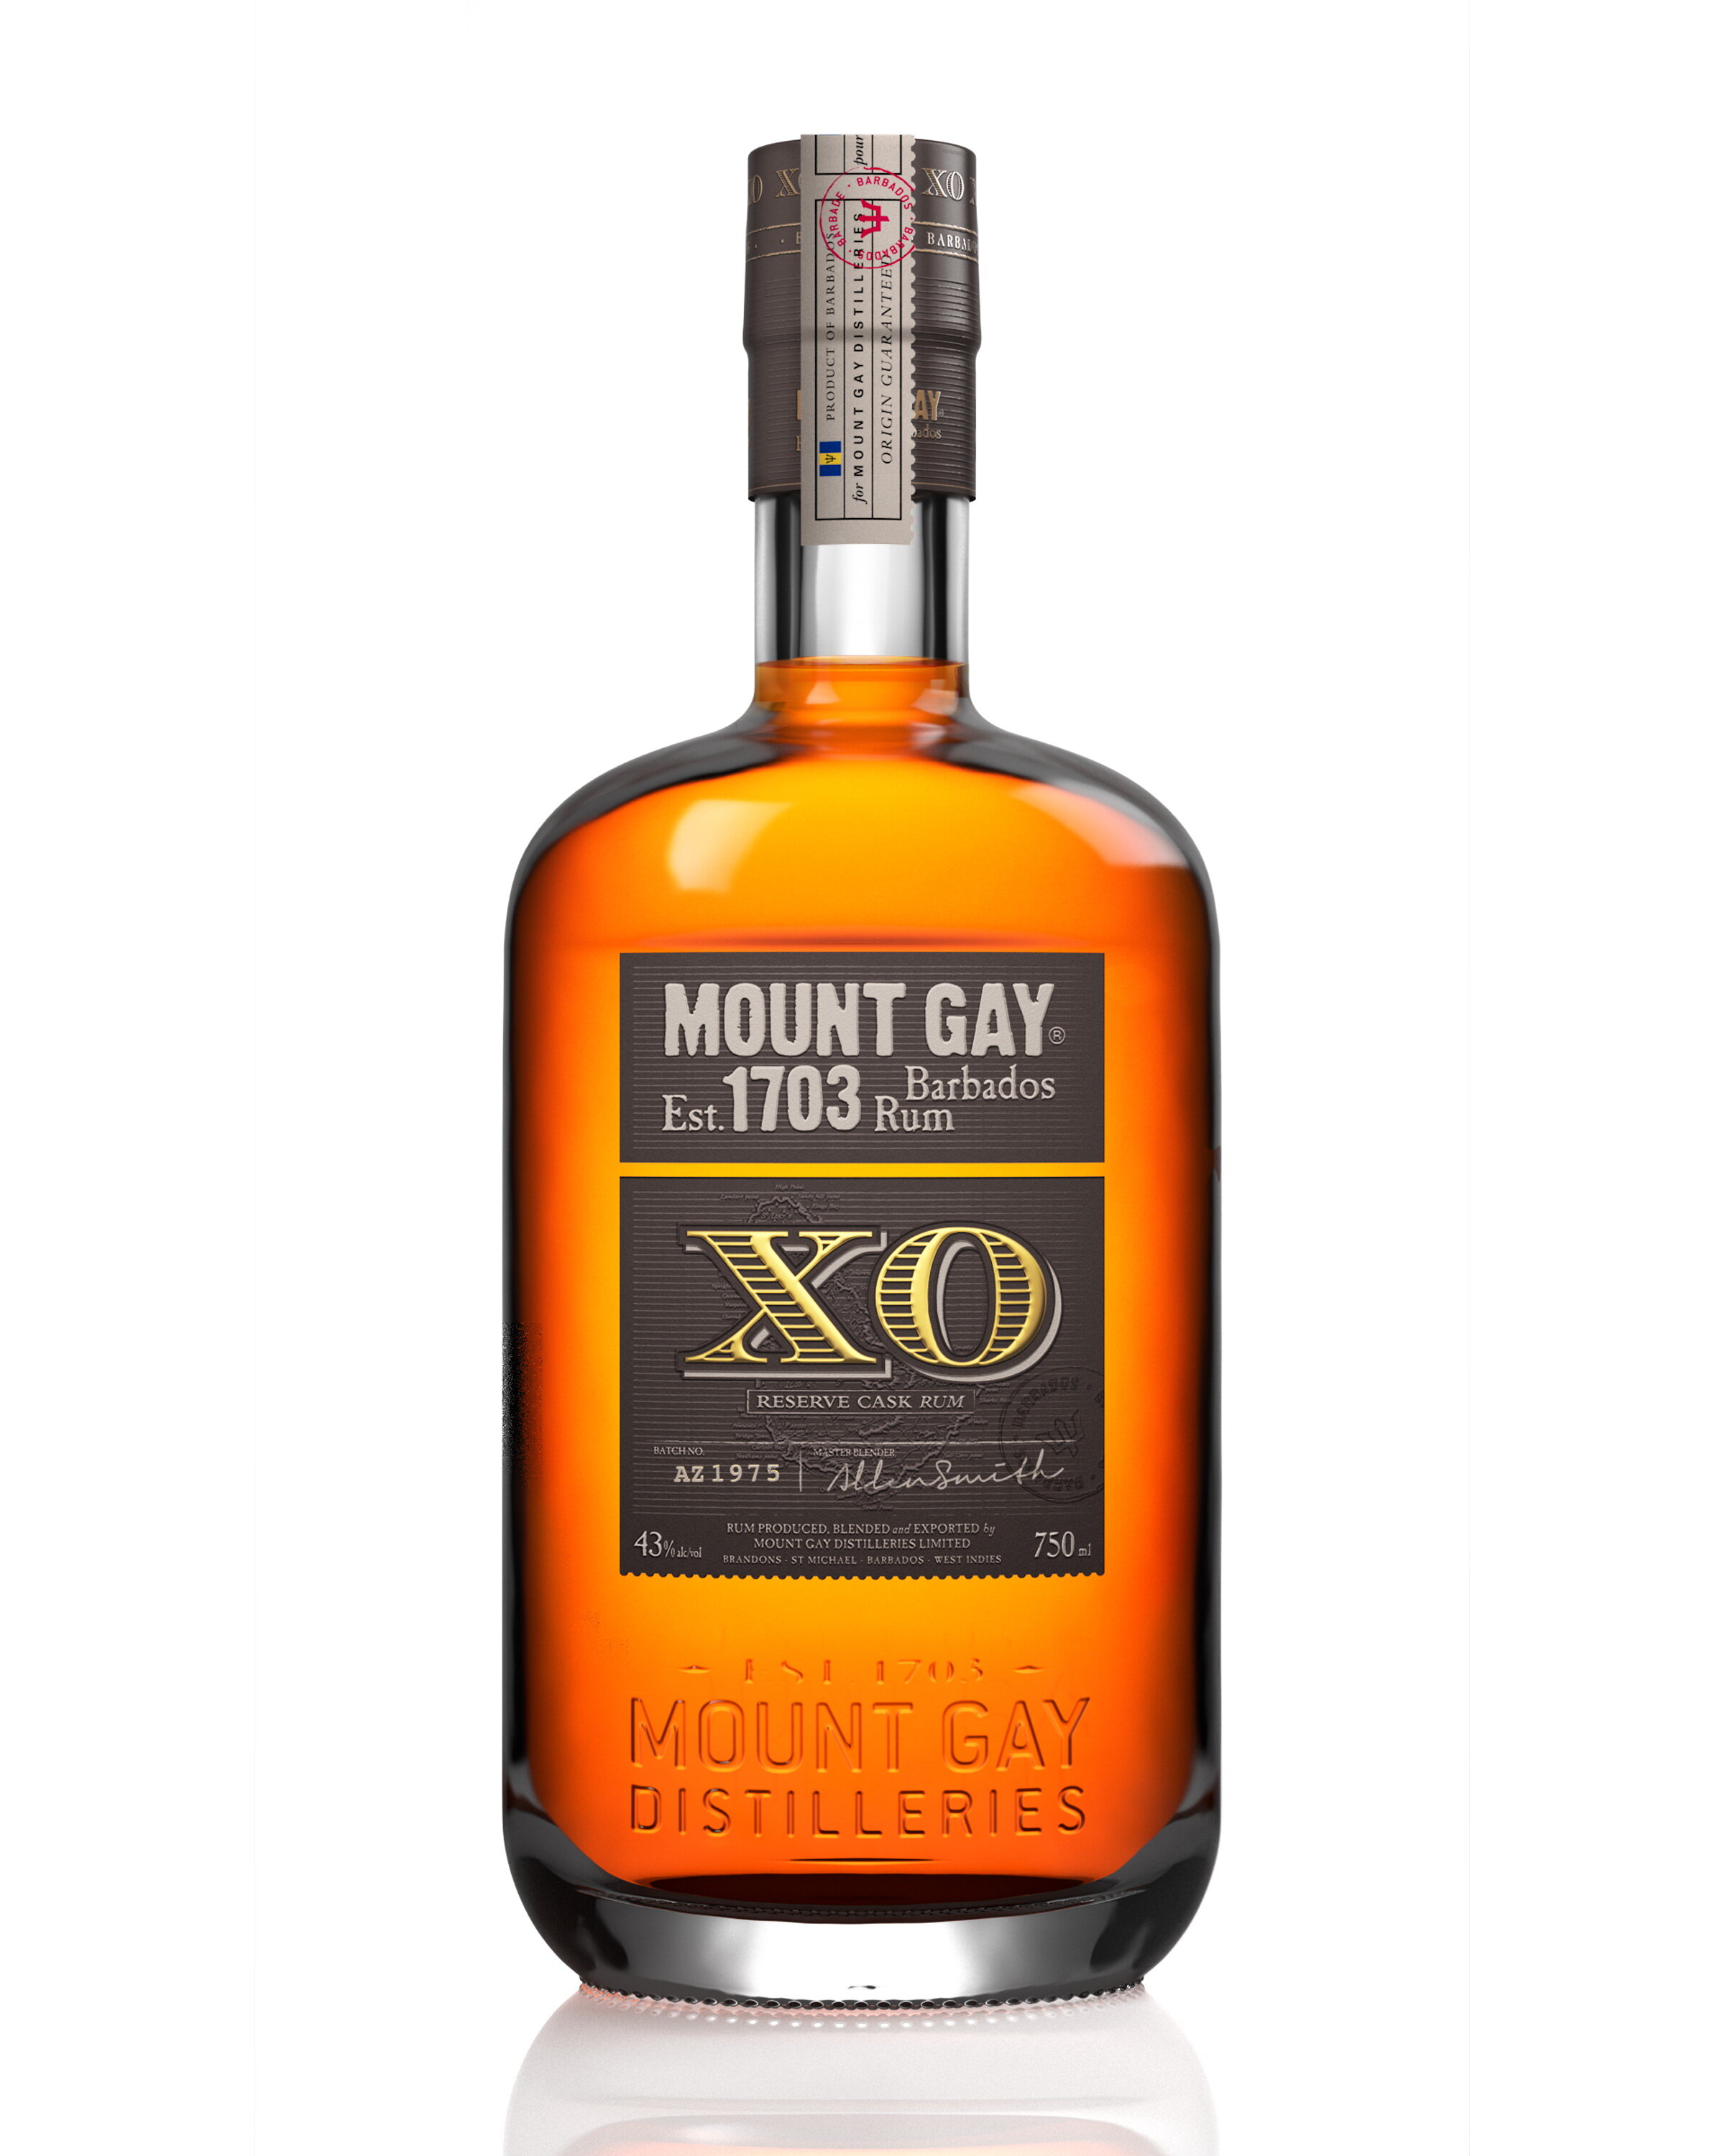 Mt_Gay_bottle.jpg